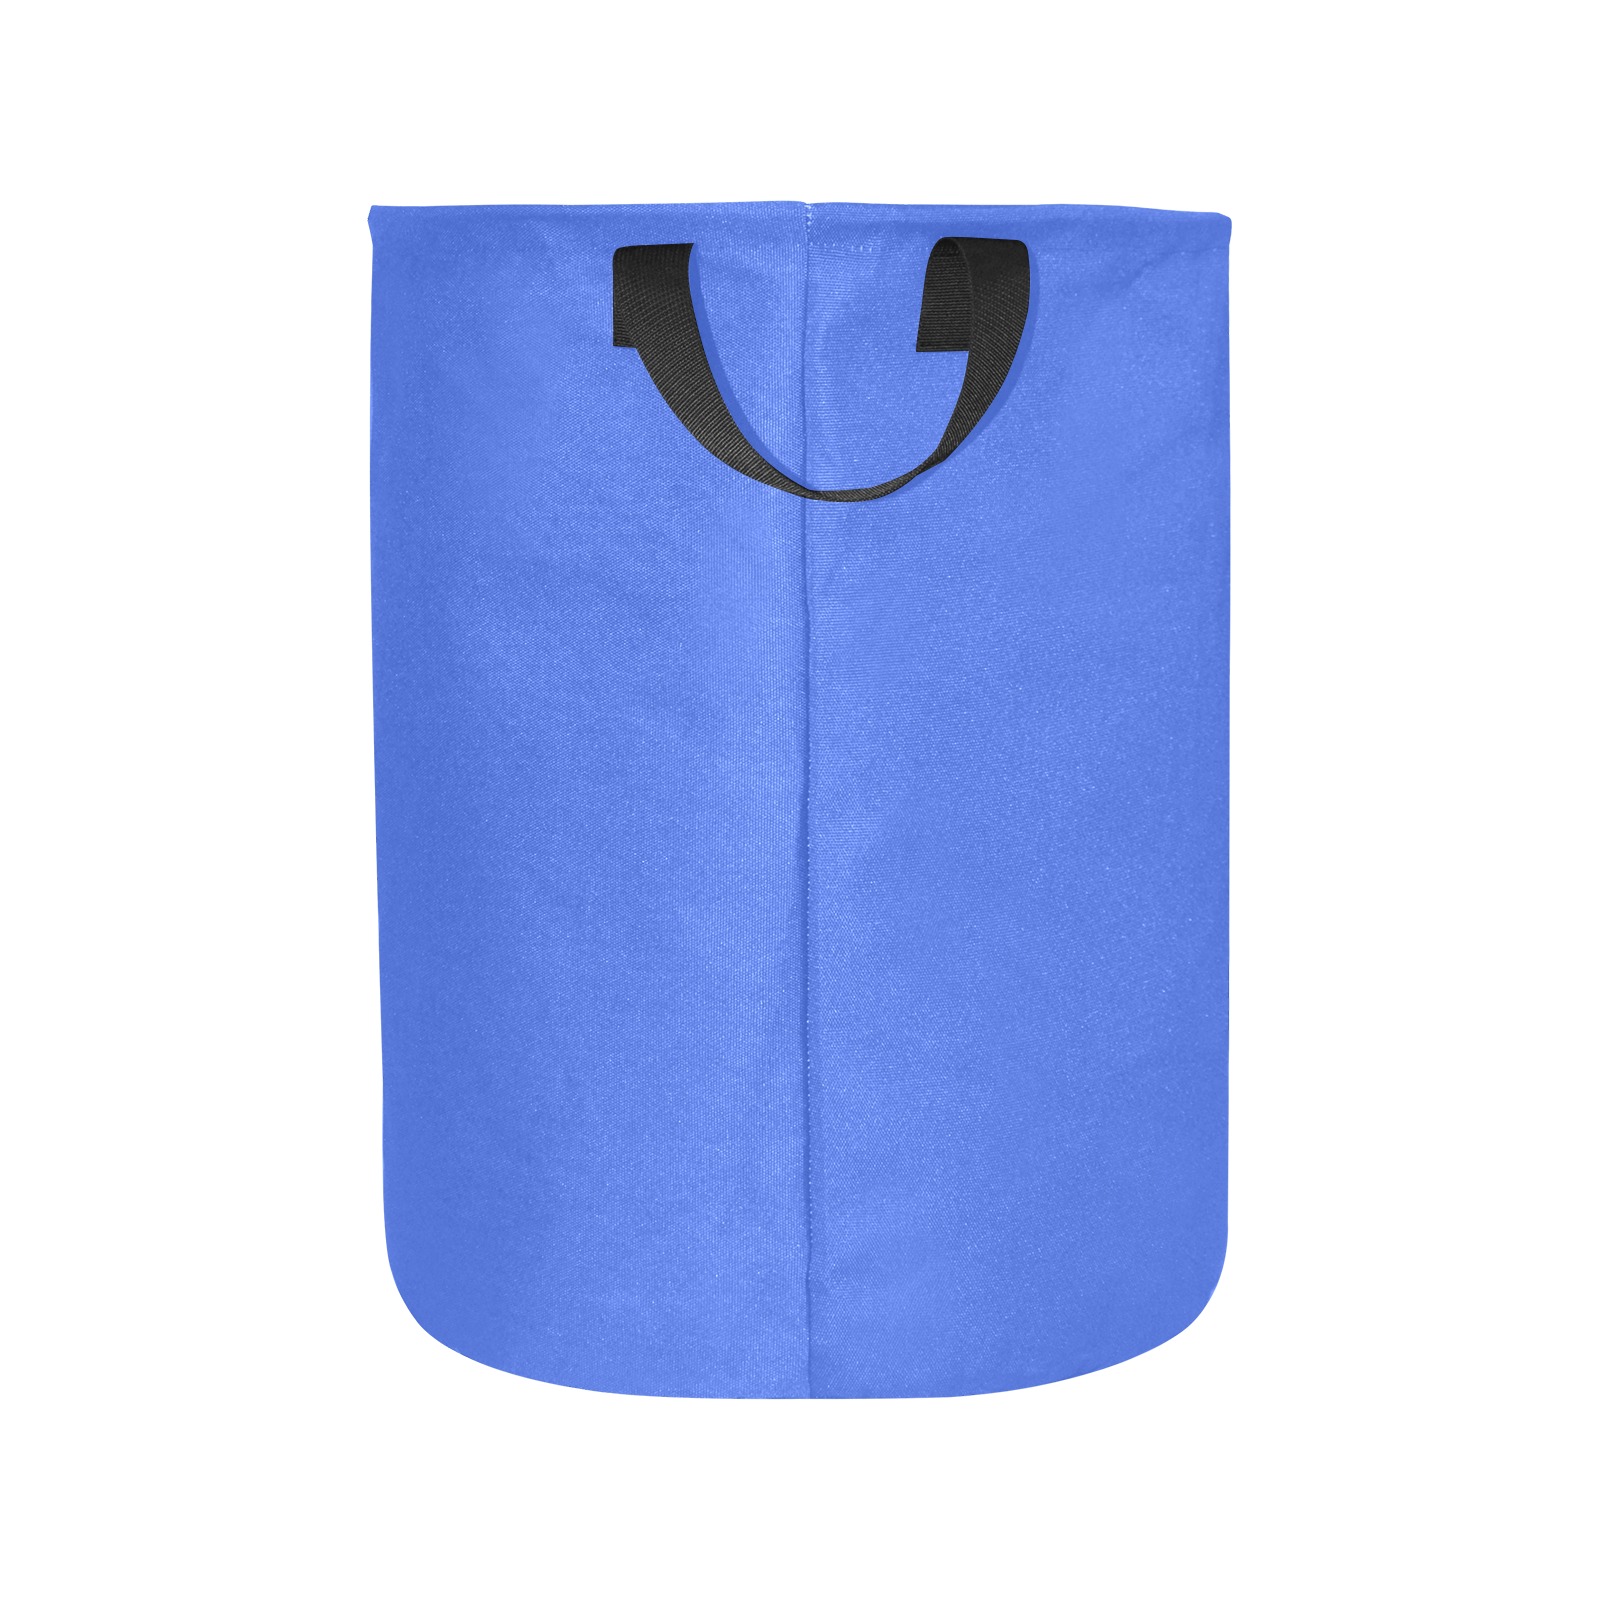 color royal blue Laundry Bag (Large)